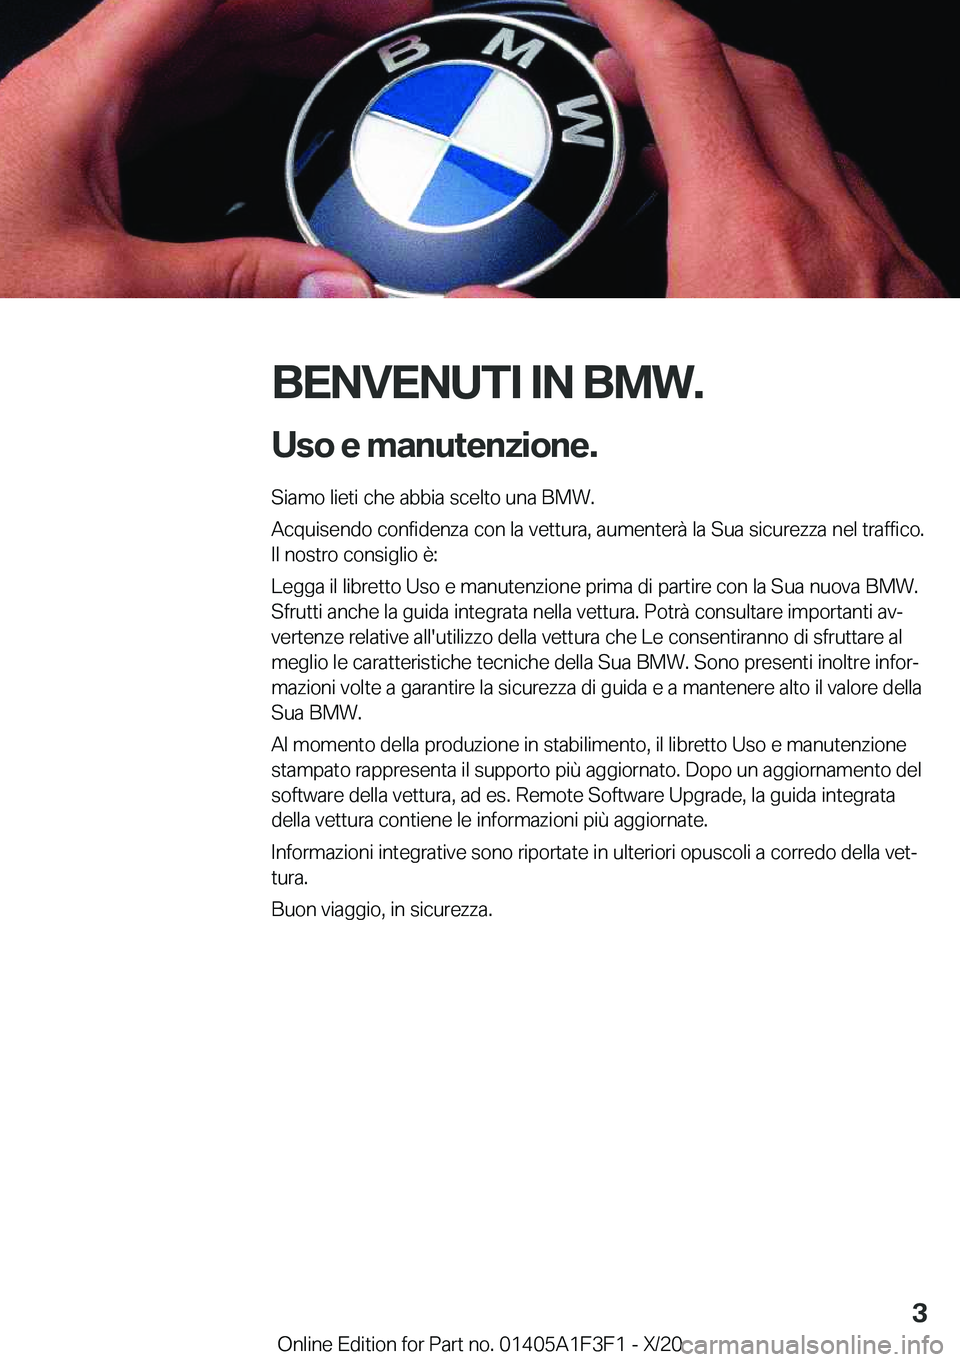 BMW X5 2021  Libretti Di Uso E manutenzione (in Italian) �B�E�N�V�E�N�U�T�I��I�N��B�M�W�.�U�s�o��e��m�a�n�u�t�e�n�z�i�o�n�e�.
�S�i�a�m�o��l�i�e�t�i��c�h�e��a�b�b�i�a��s�c�e�l�t�o��u�n�a��B�M�W�.
�A�c�q�u�i�s�e�n�d�o��c�o�n�f�i�d�e�n�z�a��c�o�n�